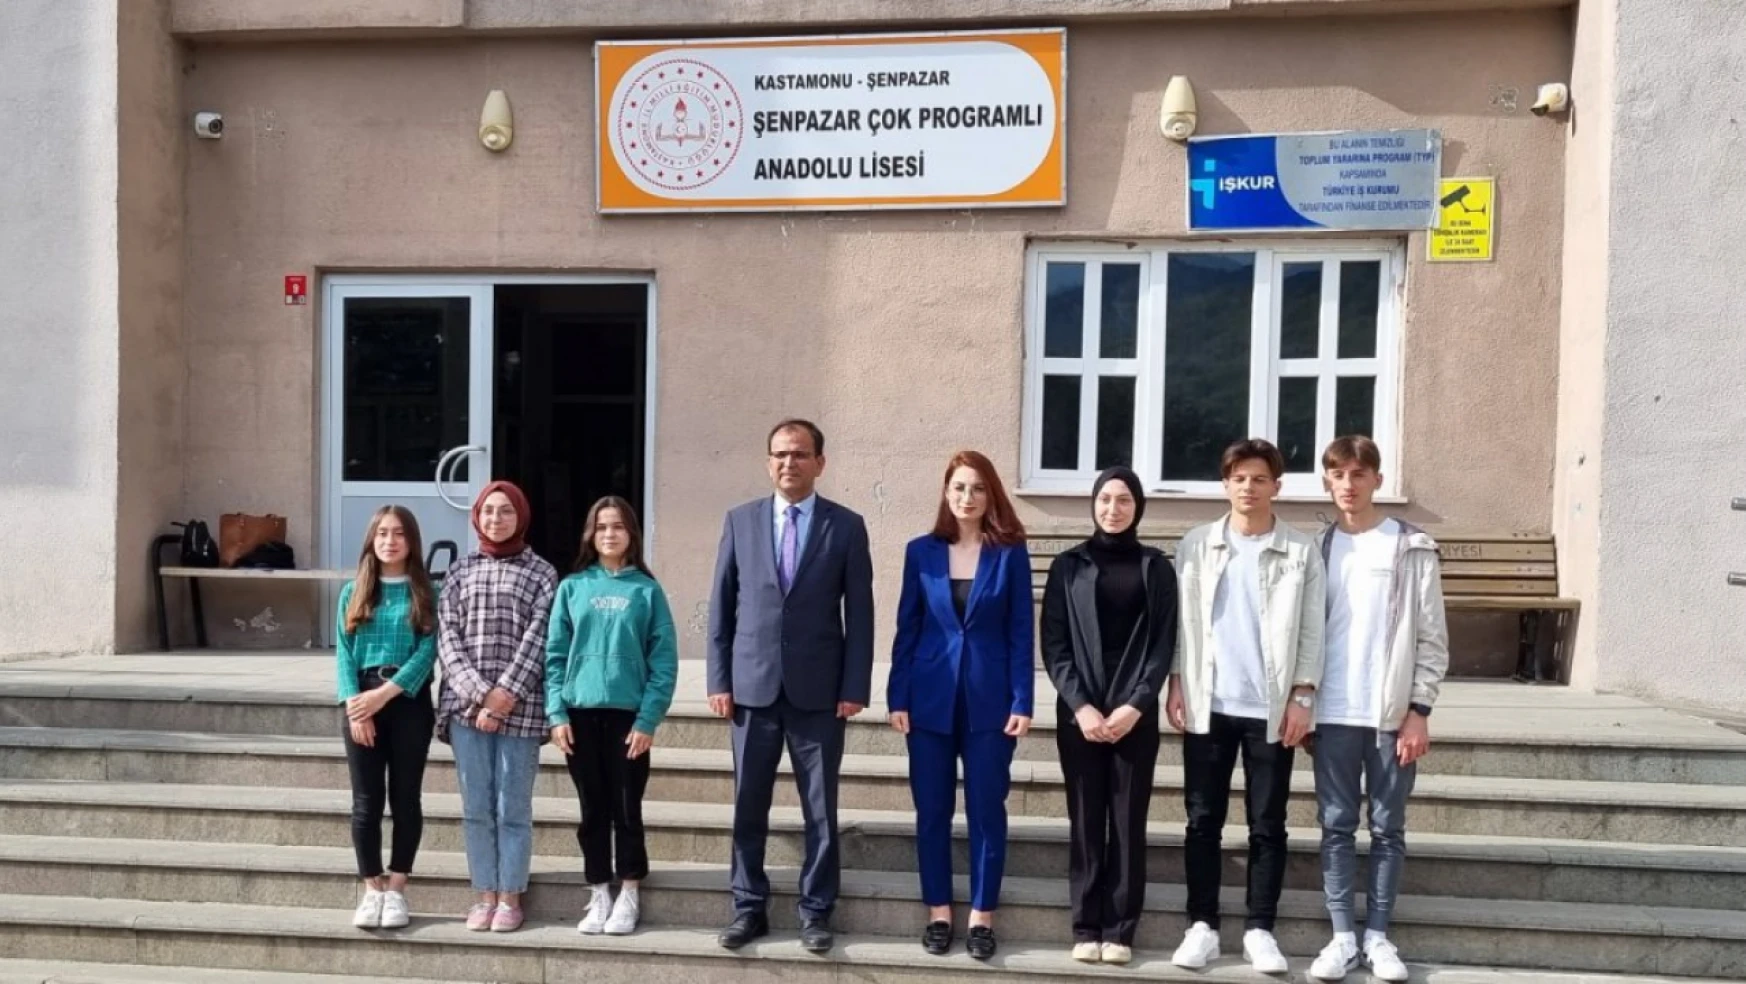 Kastamonu Şenpazarlı öğrenciler Azerbaycan'ı tanıyacak